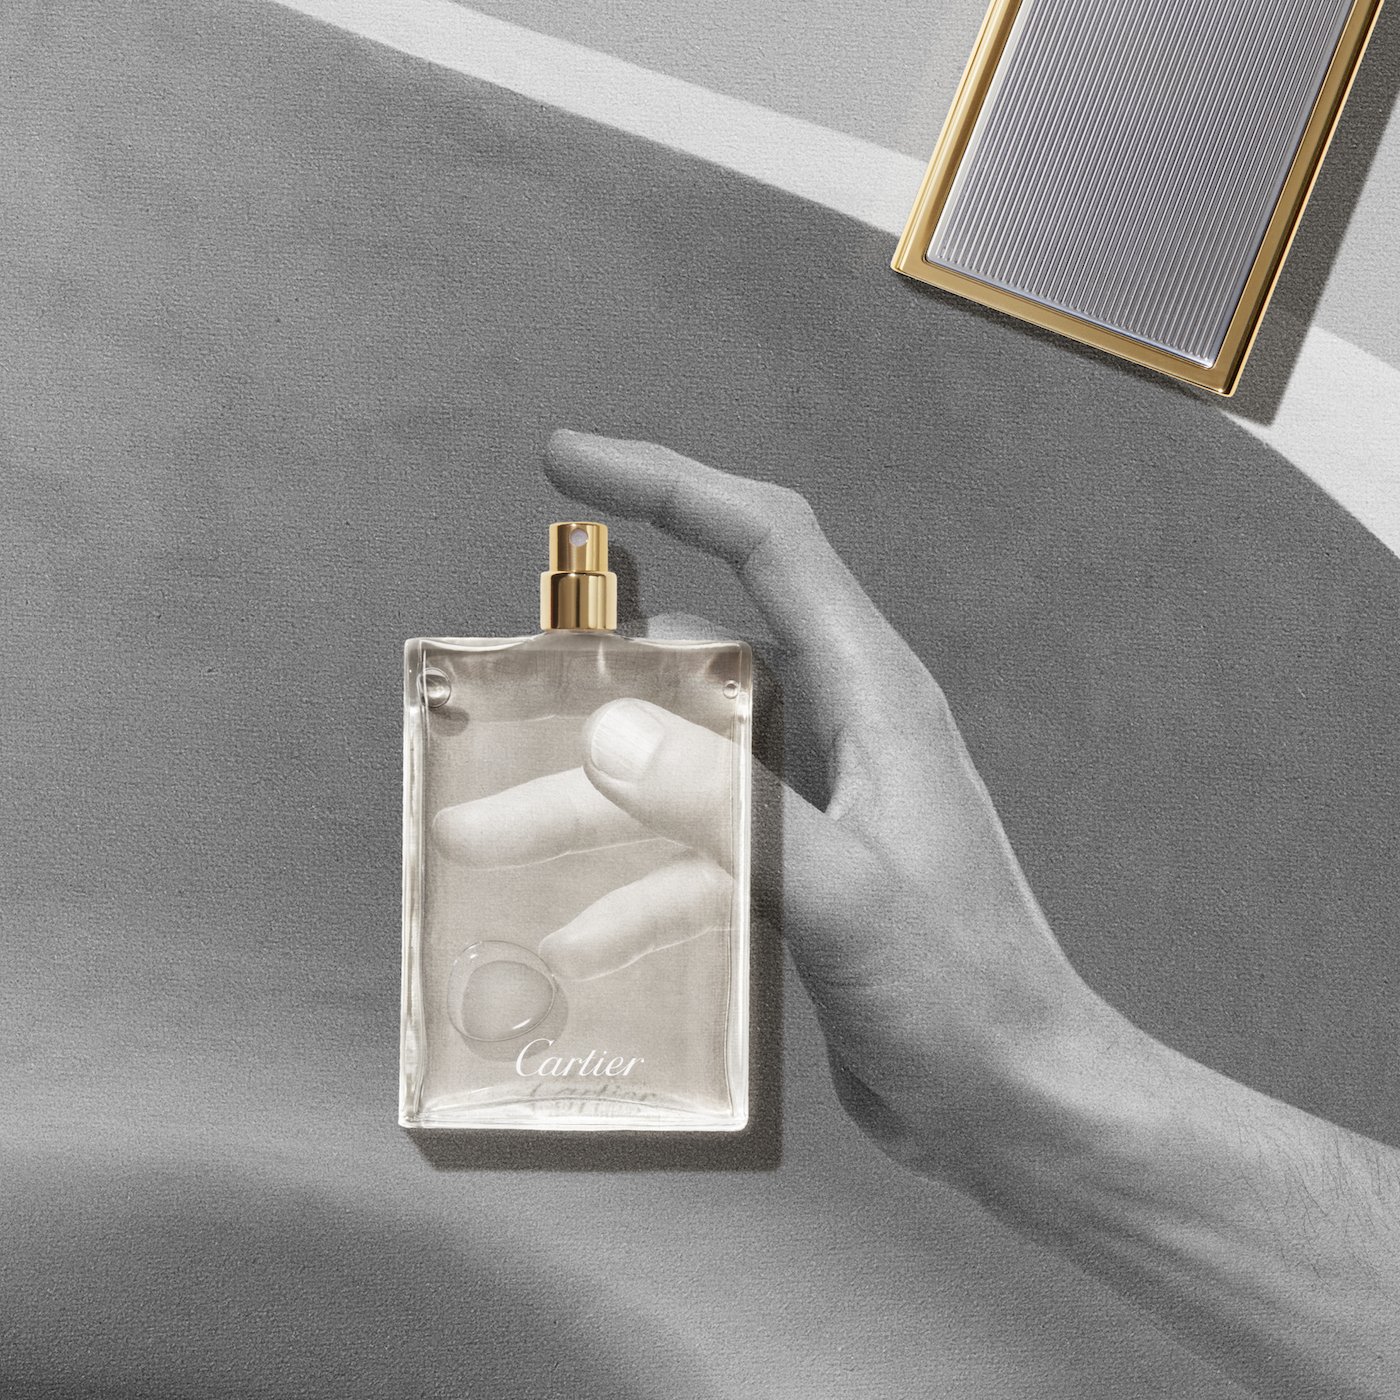 Les Nécessaires à Parfum by Cartier